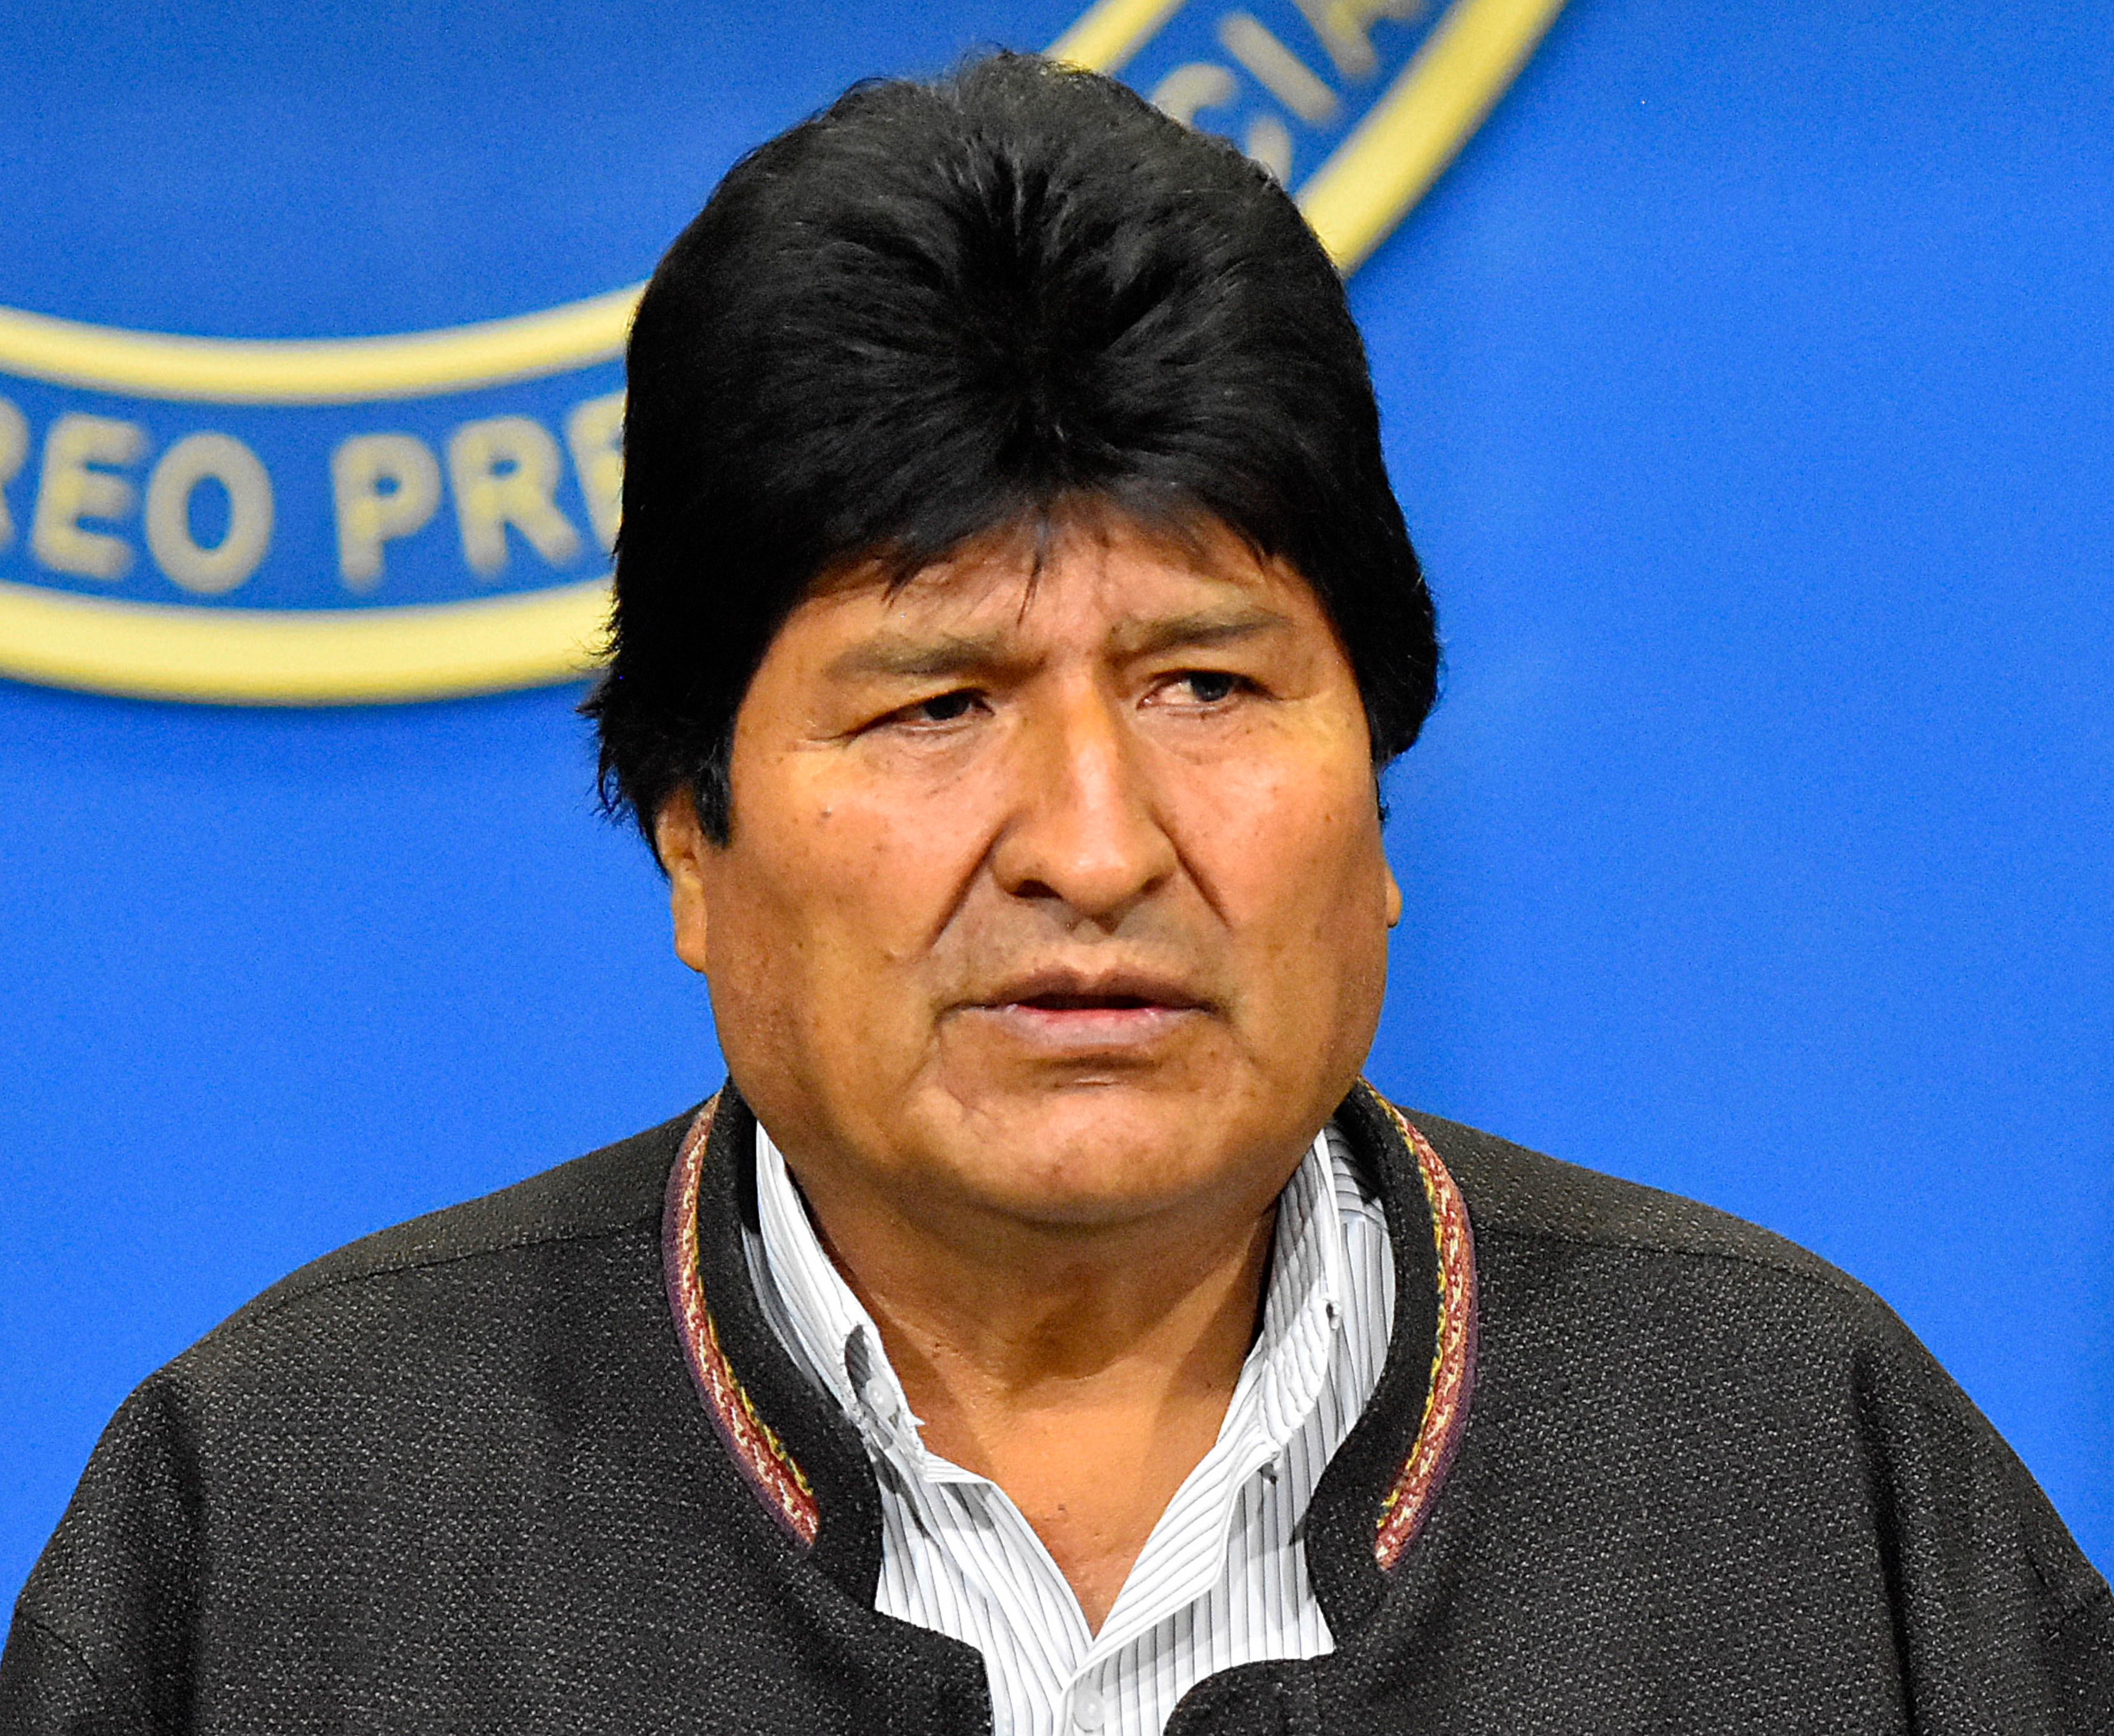  Dimite Evo Morales tras casi 14 años en el poder